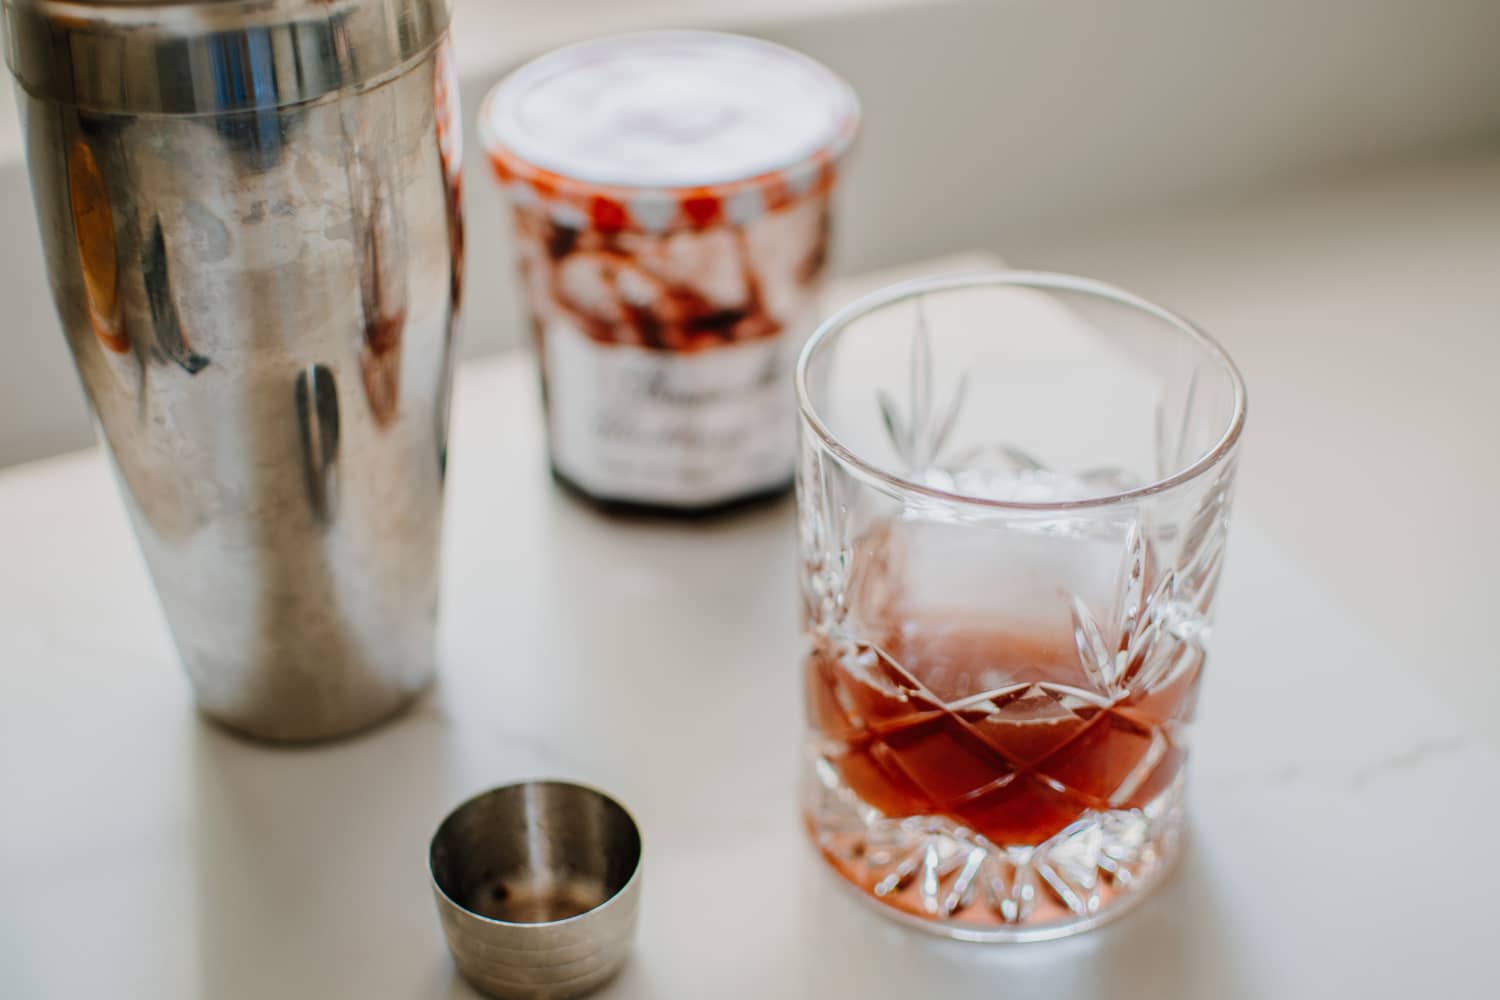 How to make homemade jam jar cocktails